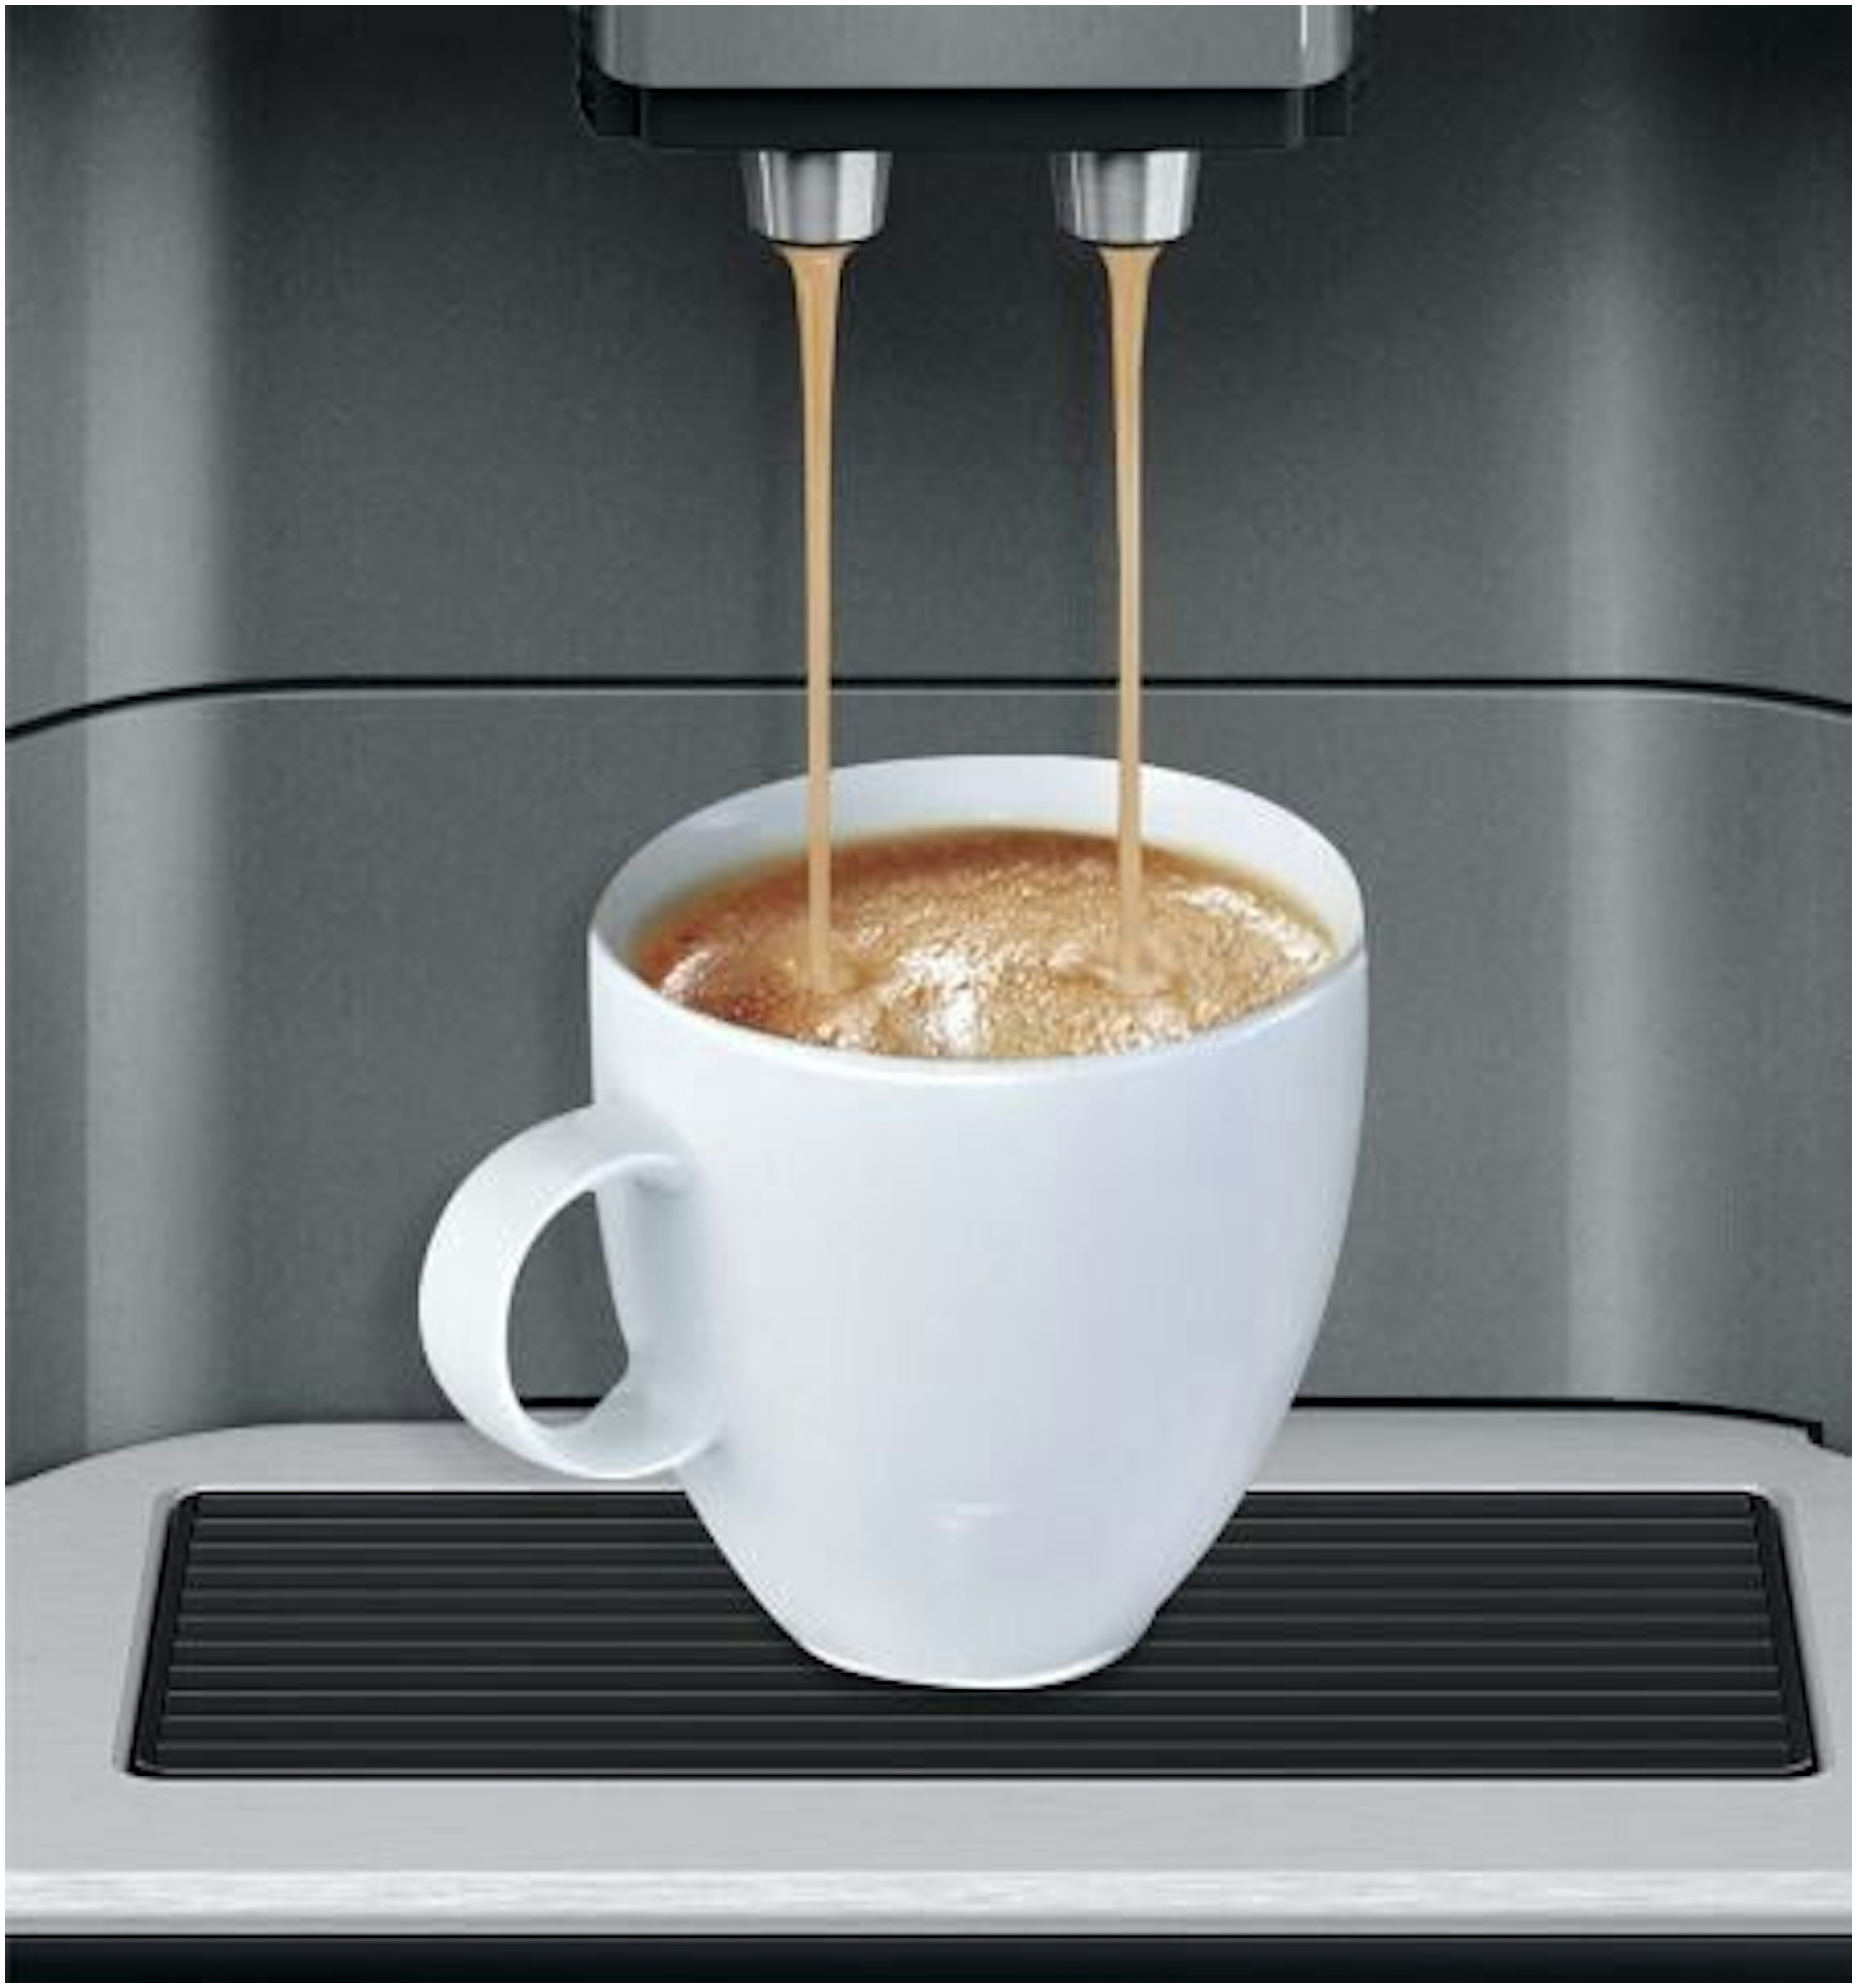 Siemens koffiemachine vrijstaand TE651209RW afbeelding 4